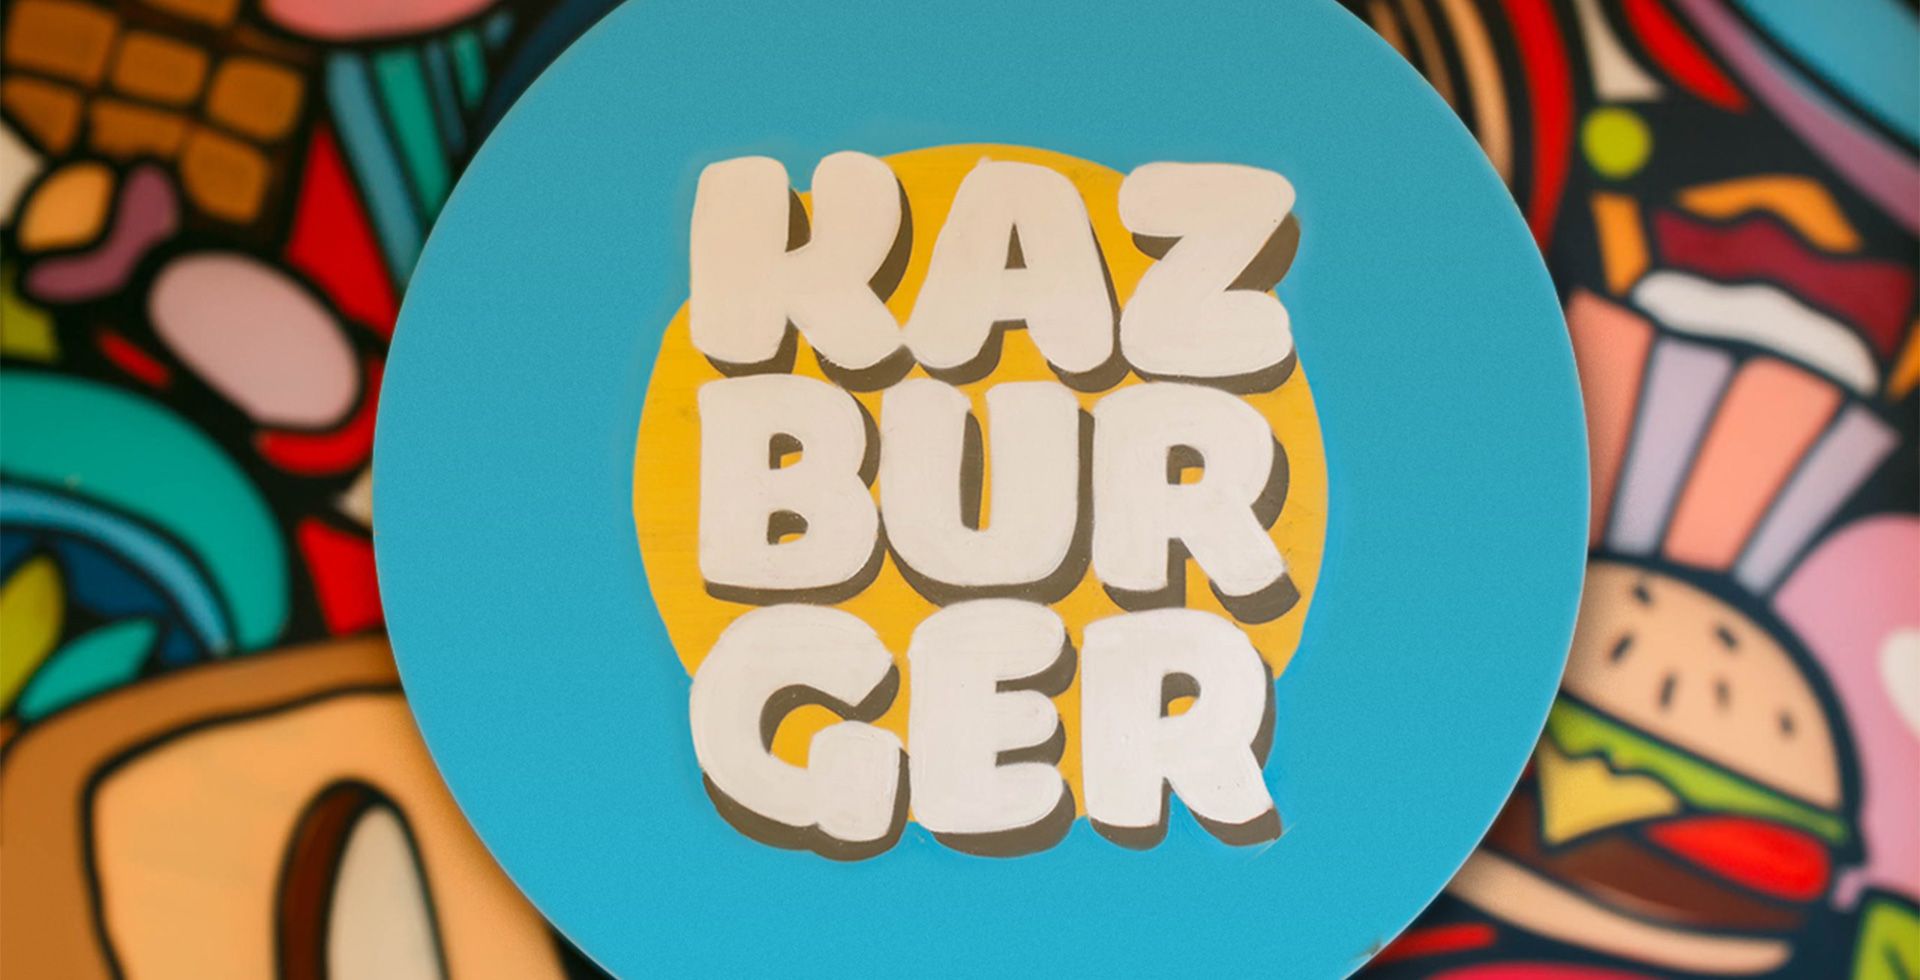 Kazburger — как из небольшого семейного предприятия выросли в национальный бургер-хаус